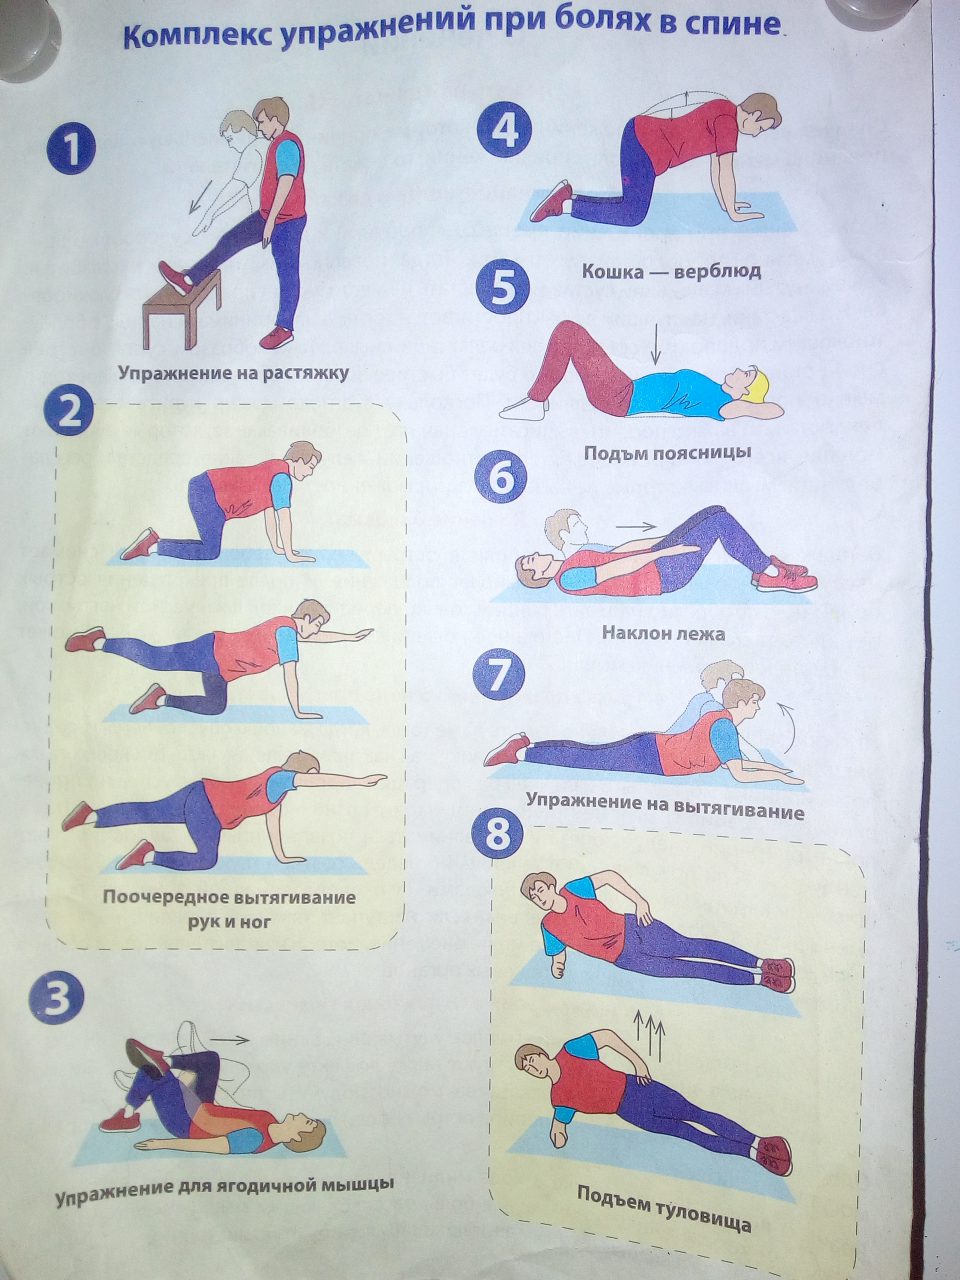 Болит спина зарядка. Упражнения при болях в спине. Упражнения для больной спины. Комплекс упражнений для поясницы. Комплекс упражнений от боли в спине.